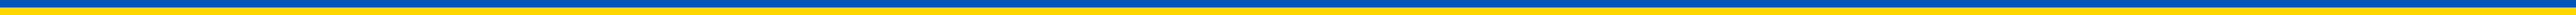 Paz na Ucrânia